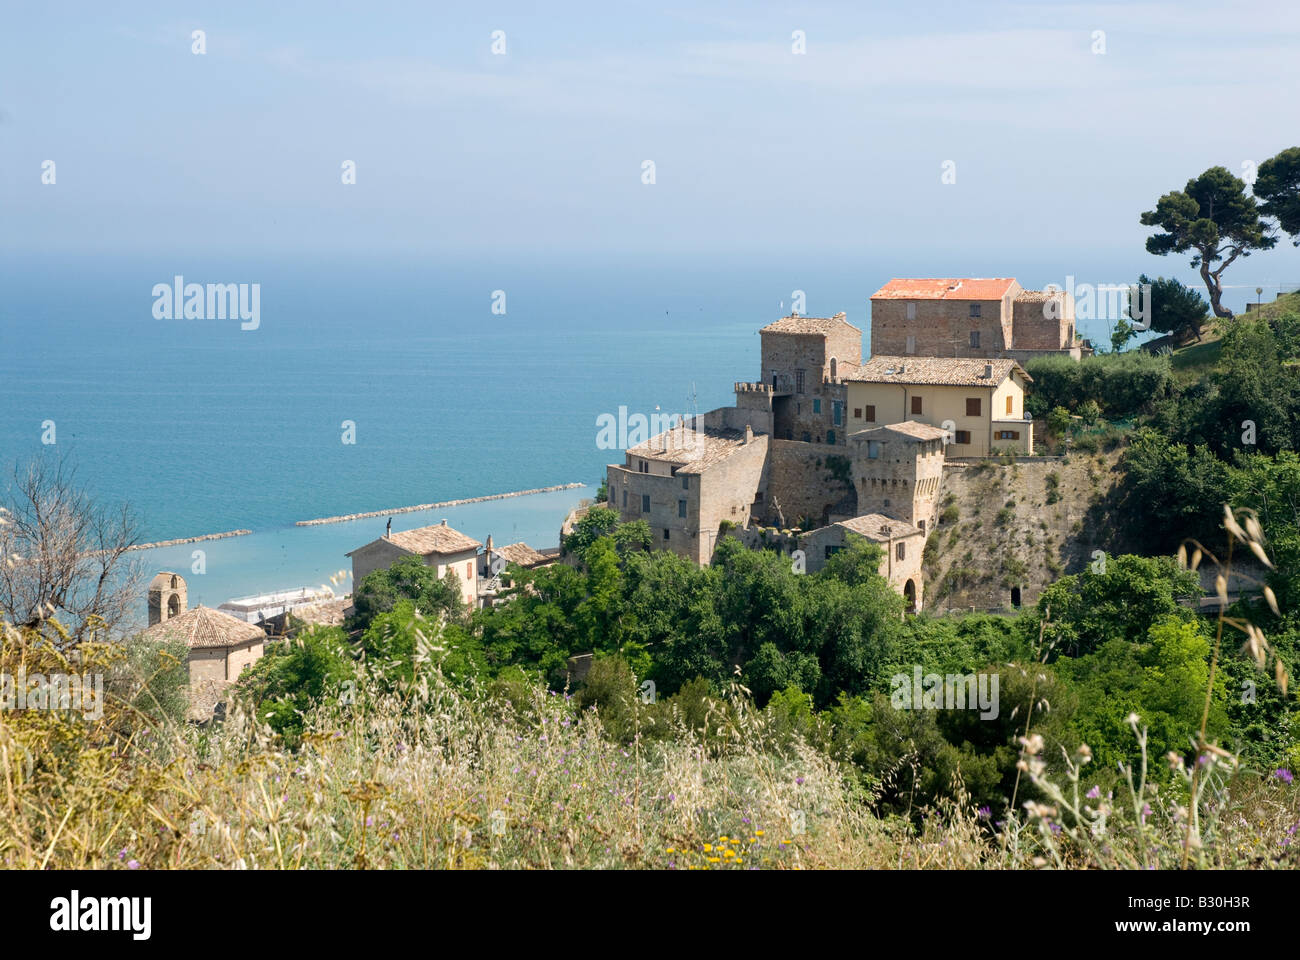 Case in collina sopra Grottammare nelle Marche che si affaccia sul mare adriatico Foto Stock